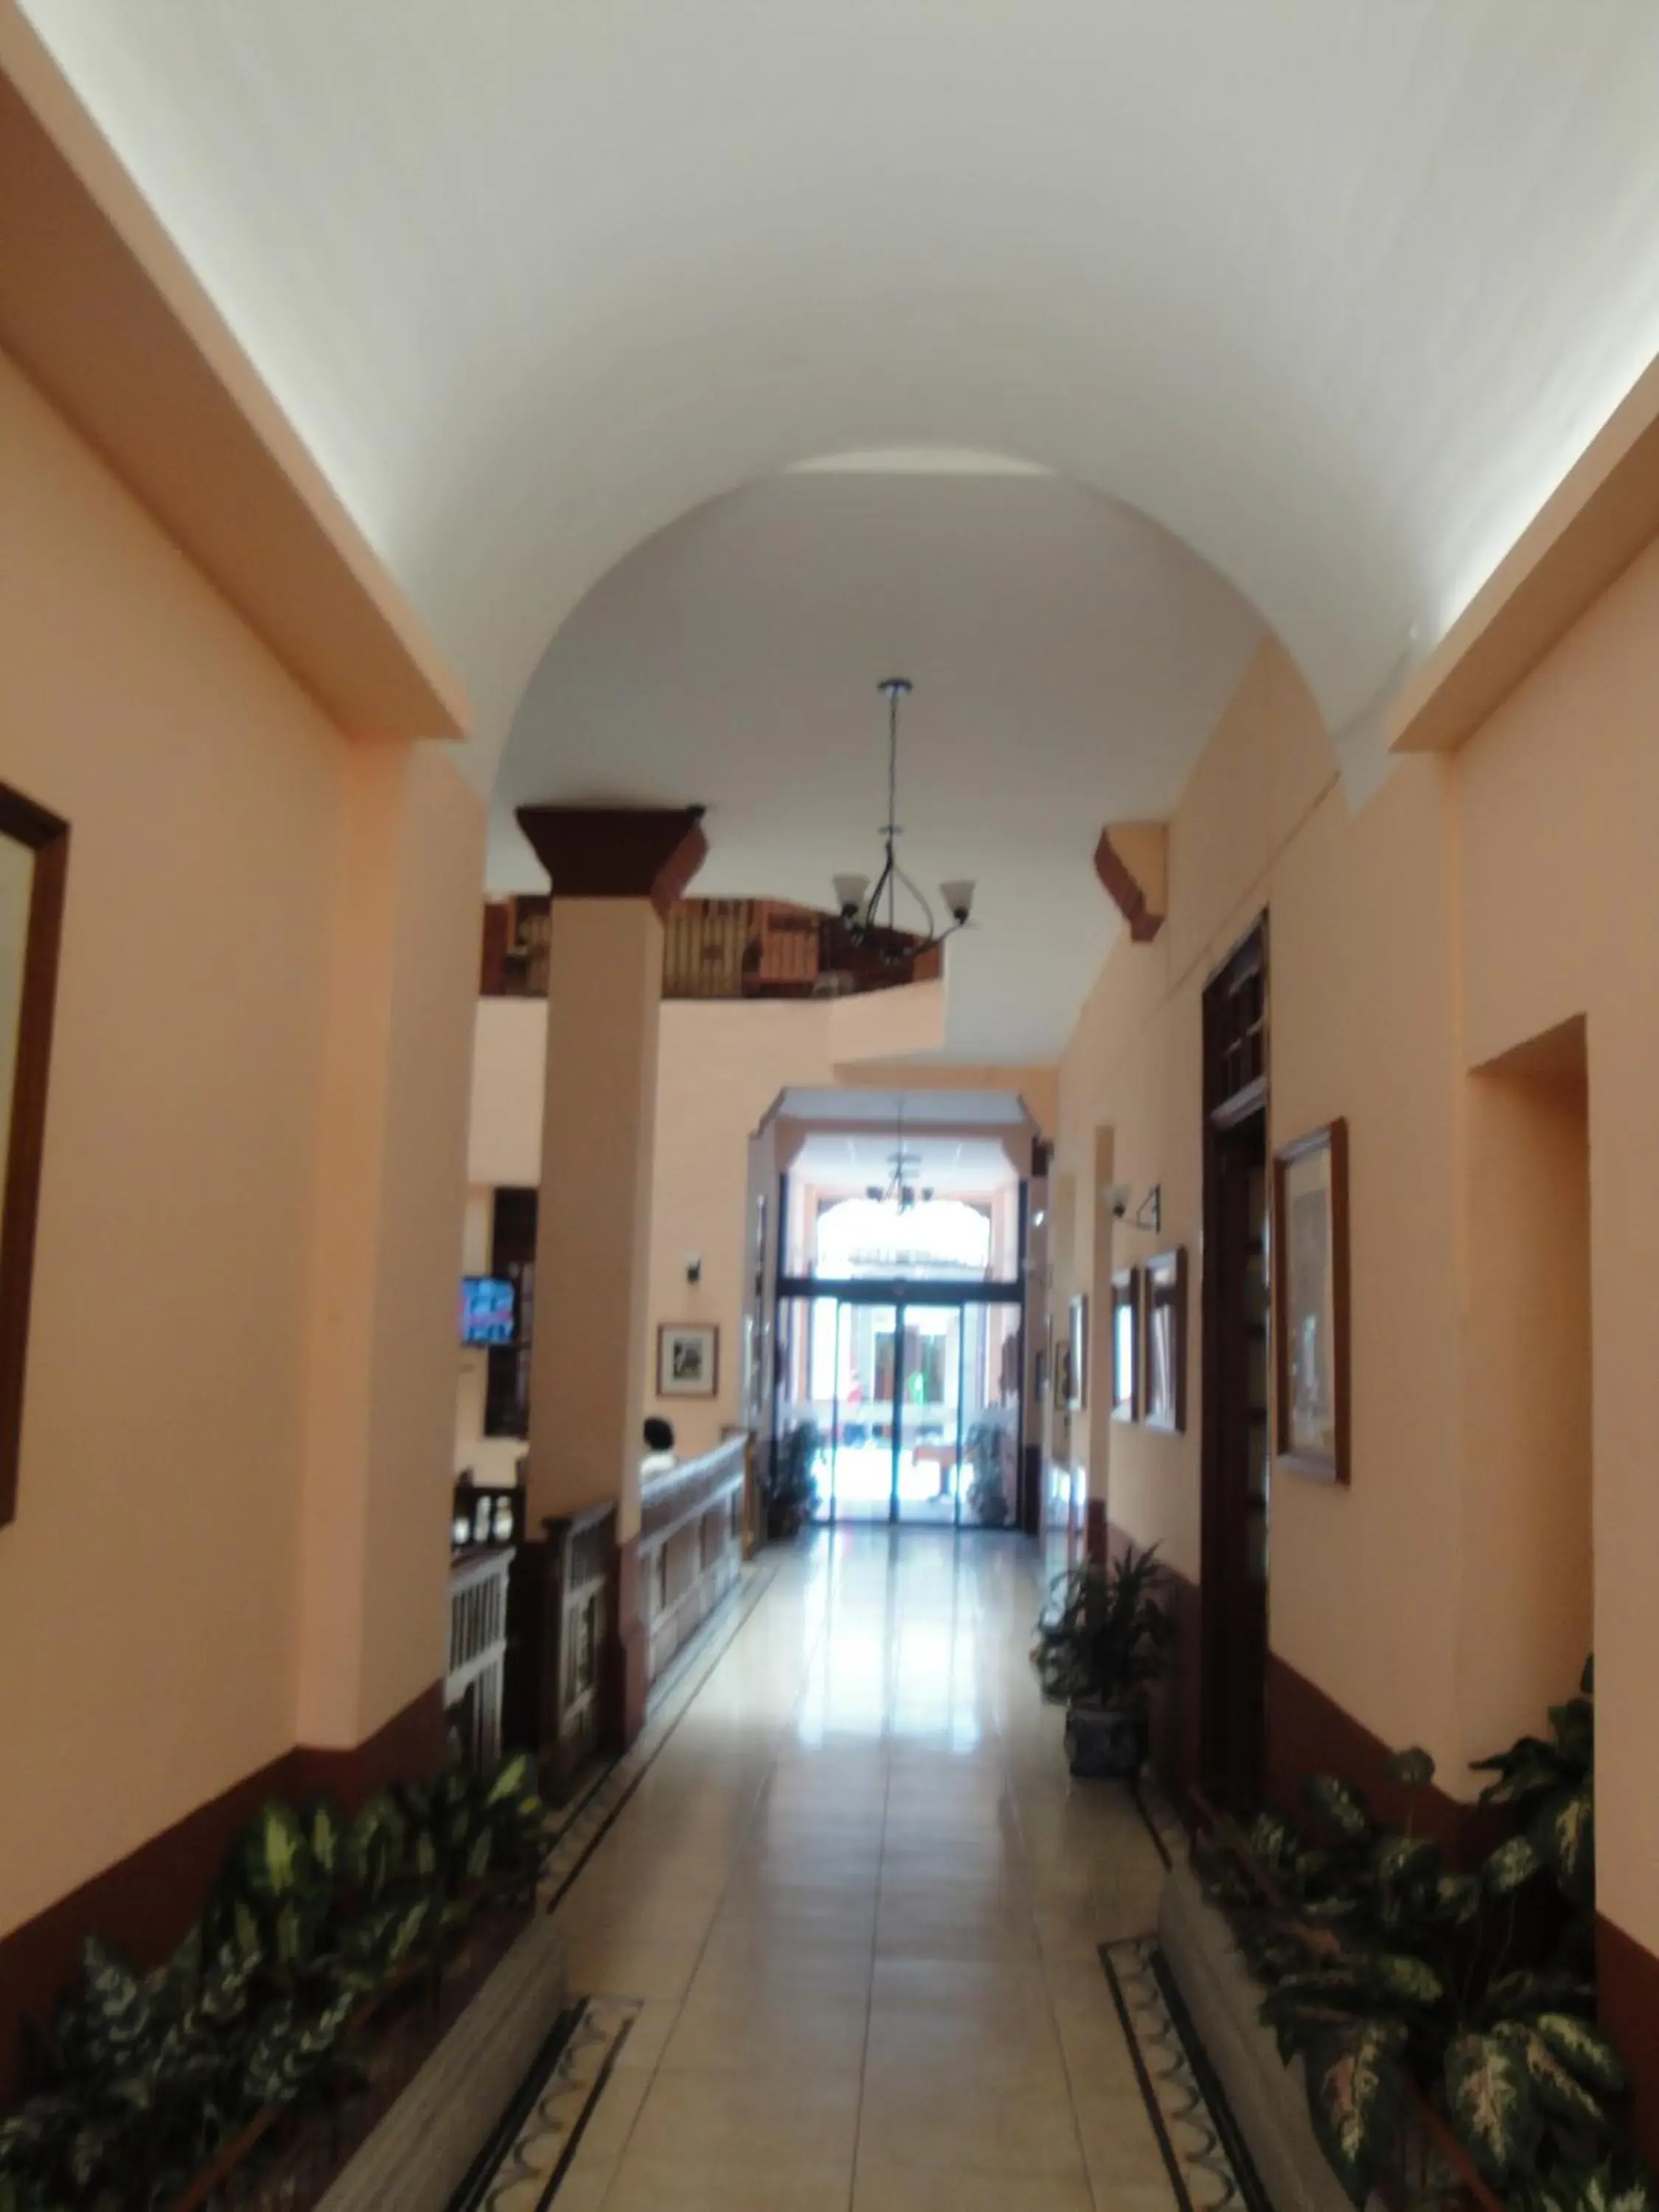 Lobby or reception in Hotel San Angel